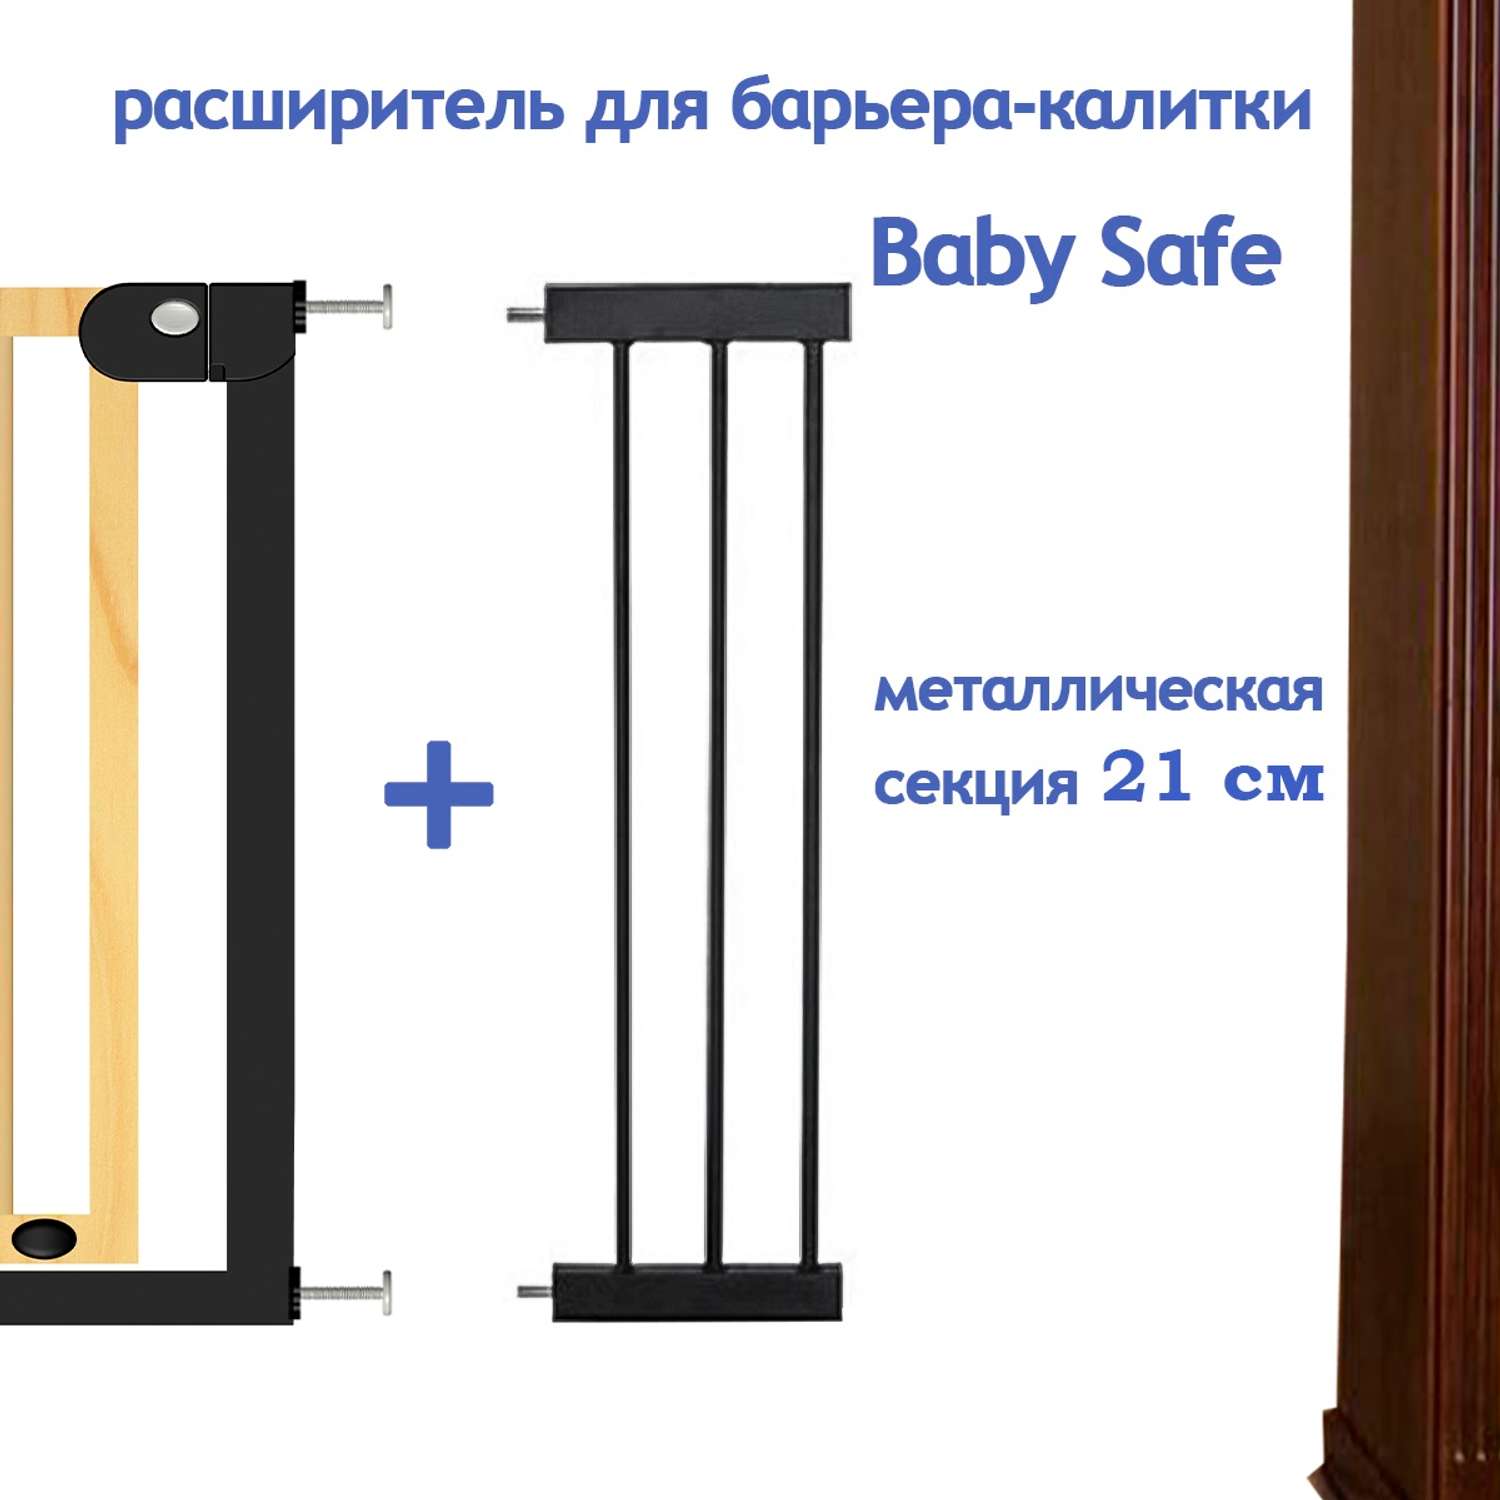 Расширитель для ворот Baby Safe EP1-21W - фото 2